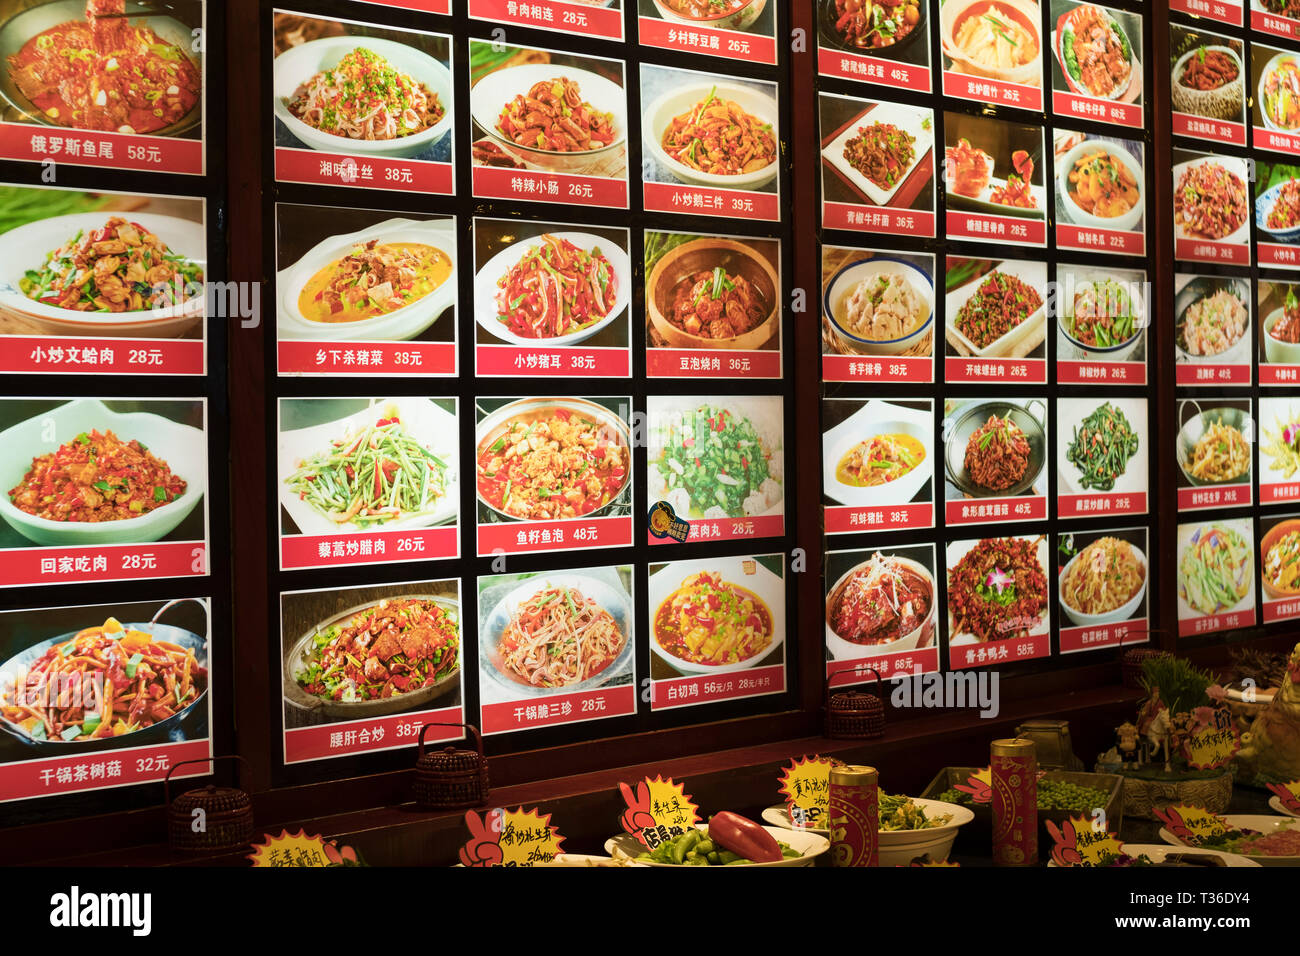 Visualized menu in a restaurant in Nanchang, Jiangxi province, China. Stock Photo